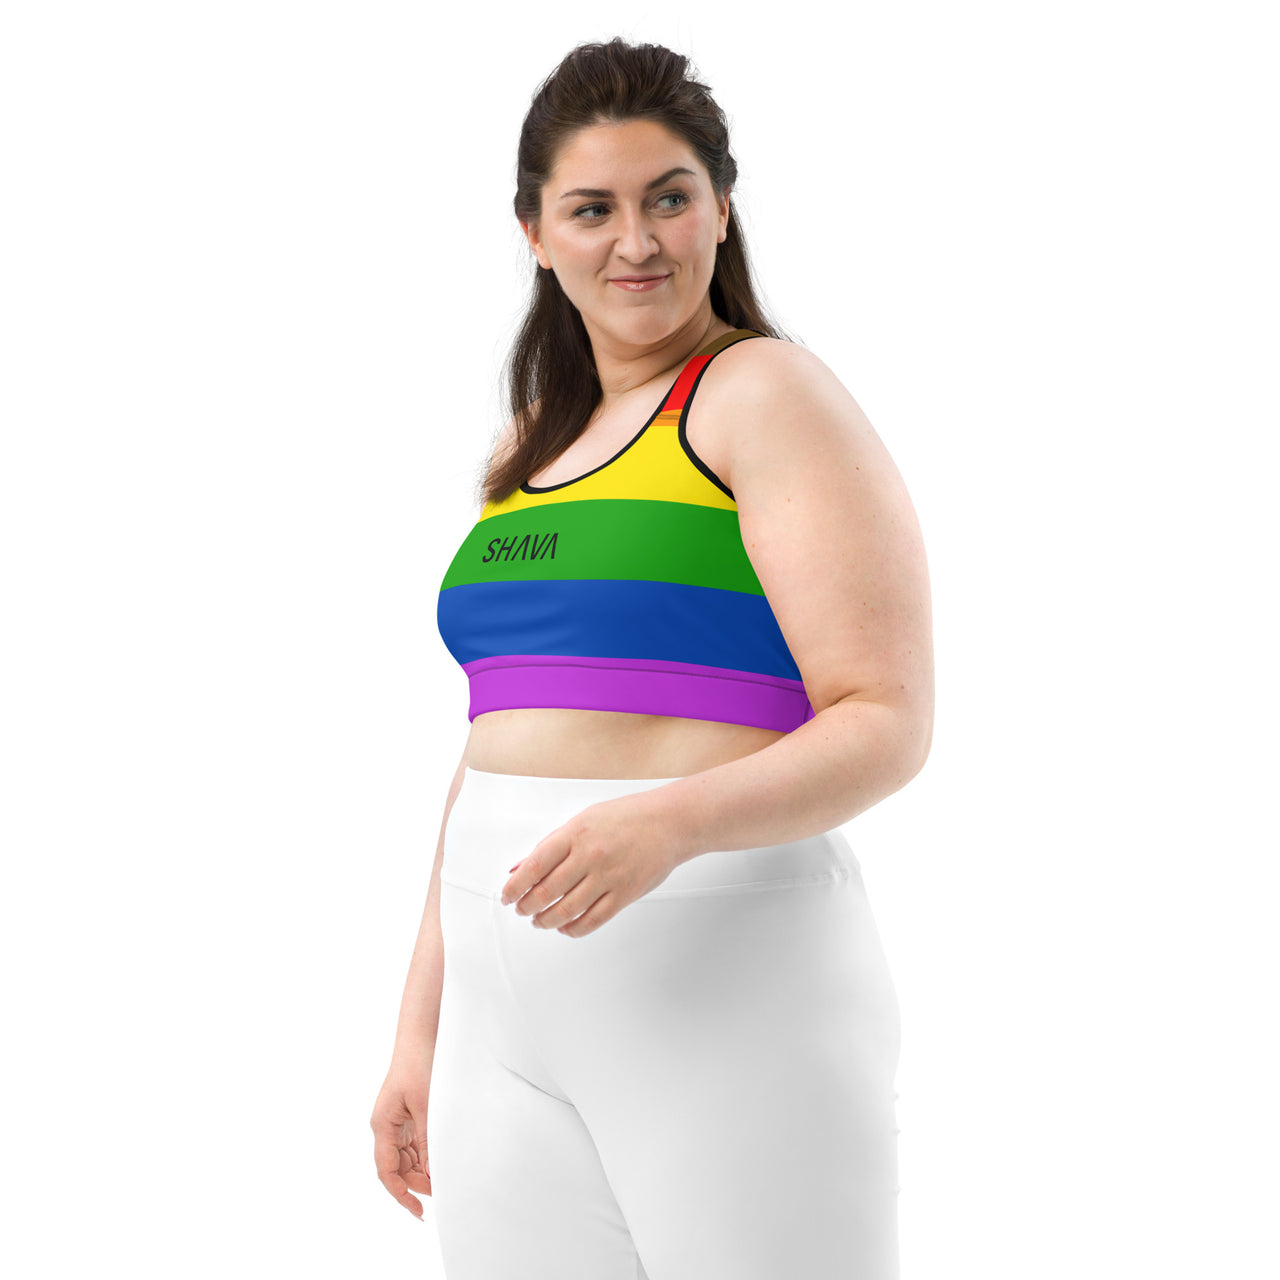 Philadelphia Flag LGBTQ Sports Bra Women's Size - SHAVA